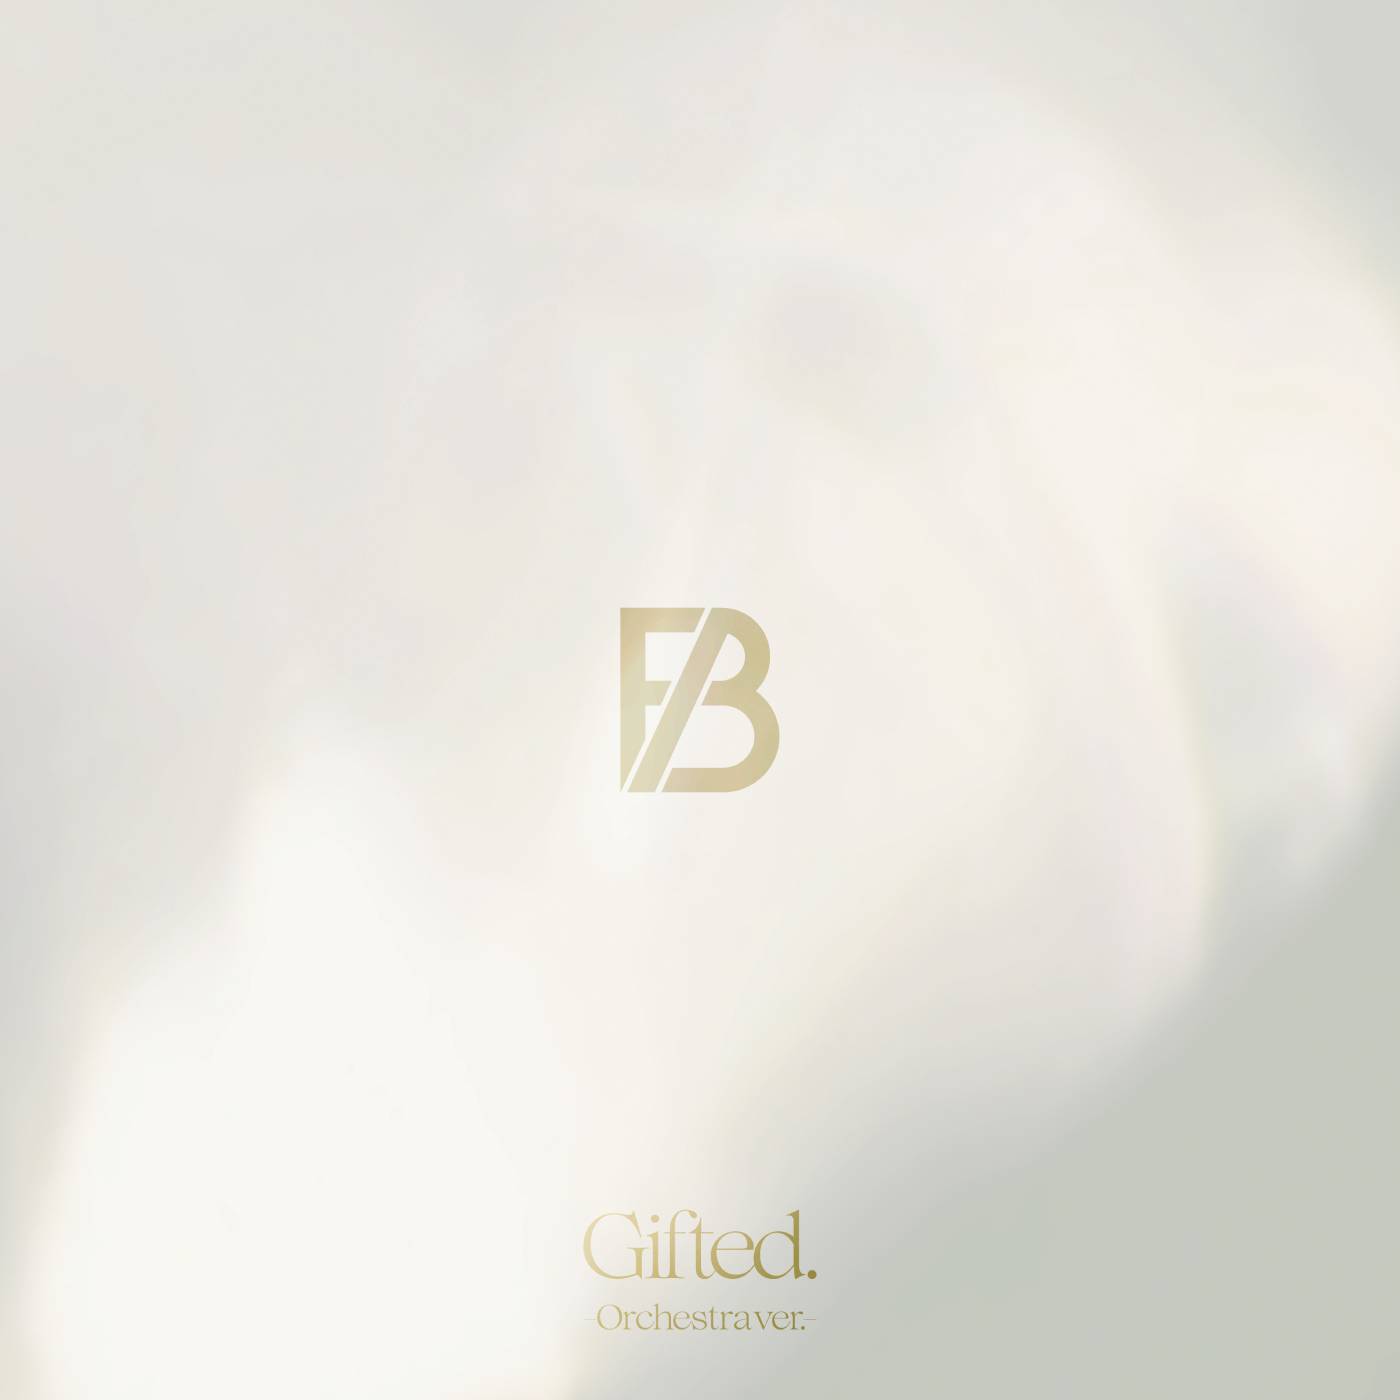 BE:FIRSTデビュー曲「Gifted.」オーケストラアレンジが配信リリース決定！ 立体音響技術を用いたミックスで立体的な響きに - 画像一覧（1/1）